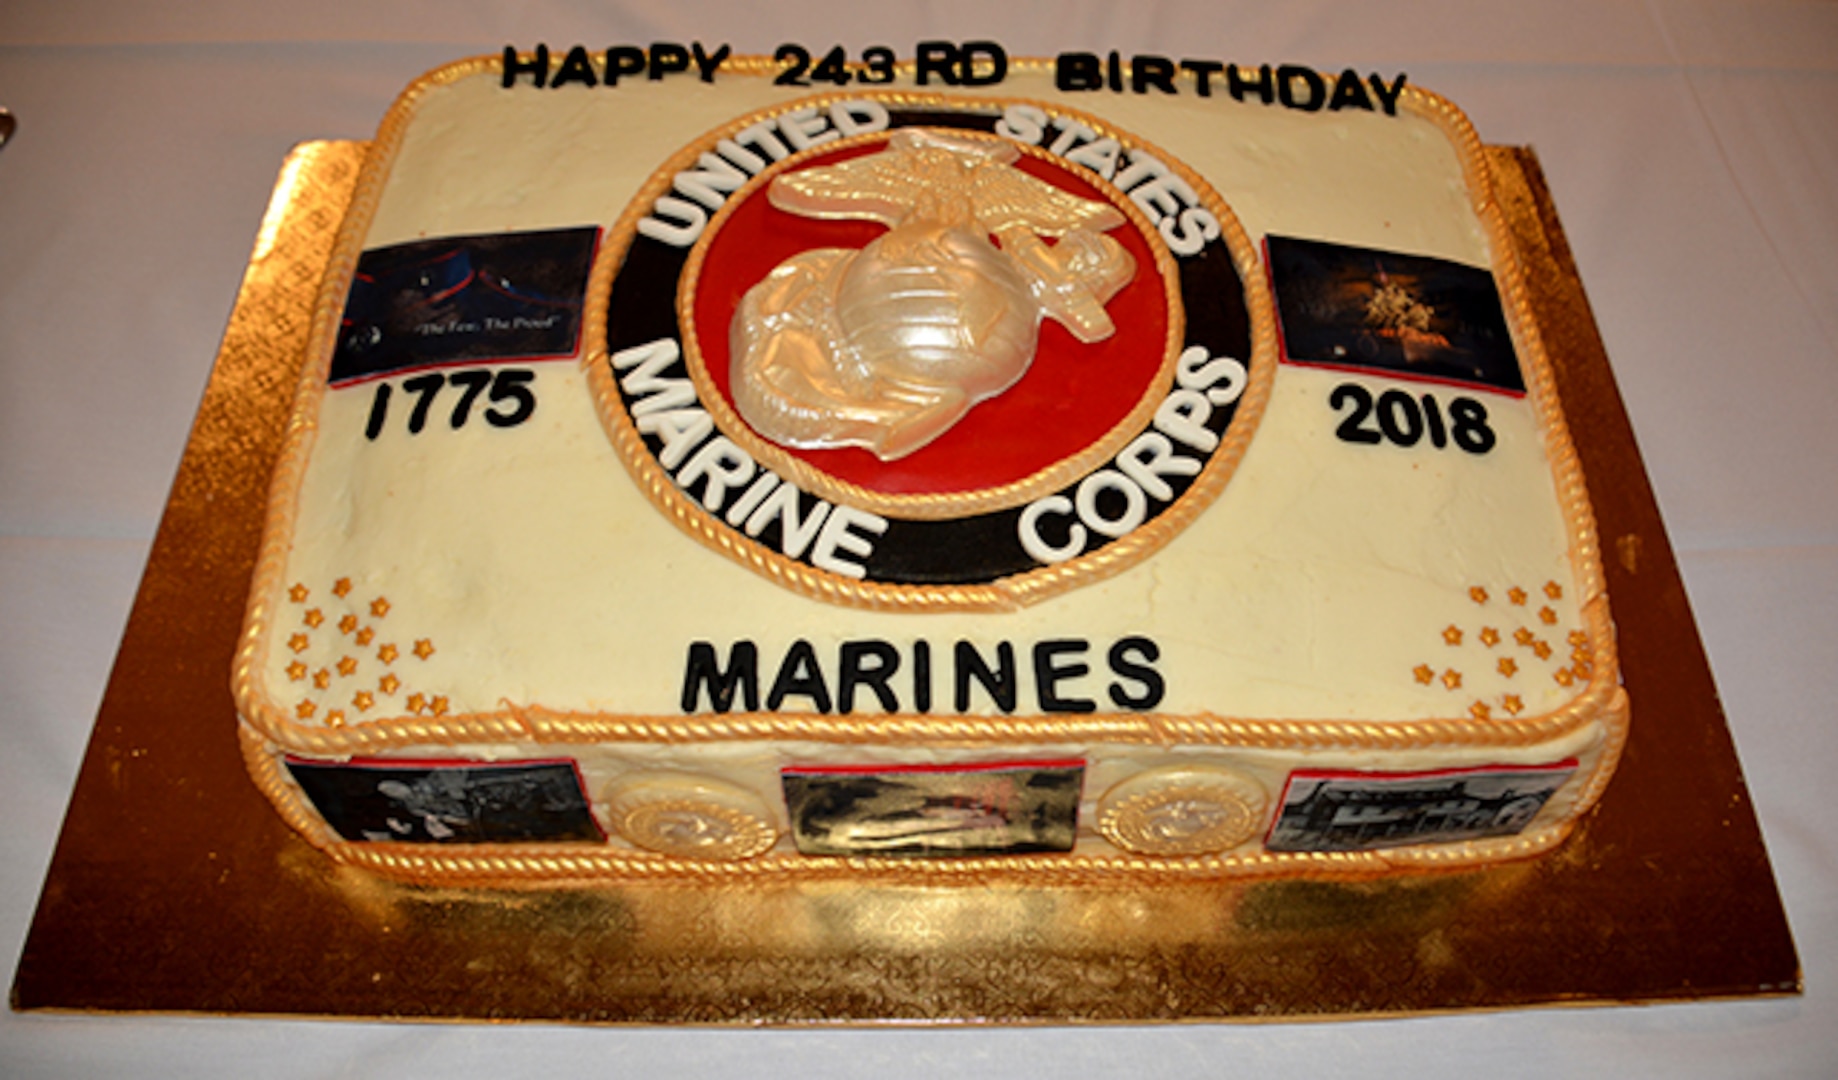 DLA celebrates the Marine’s 243rd birthday!